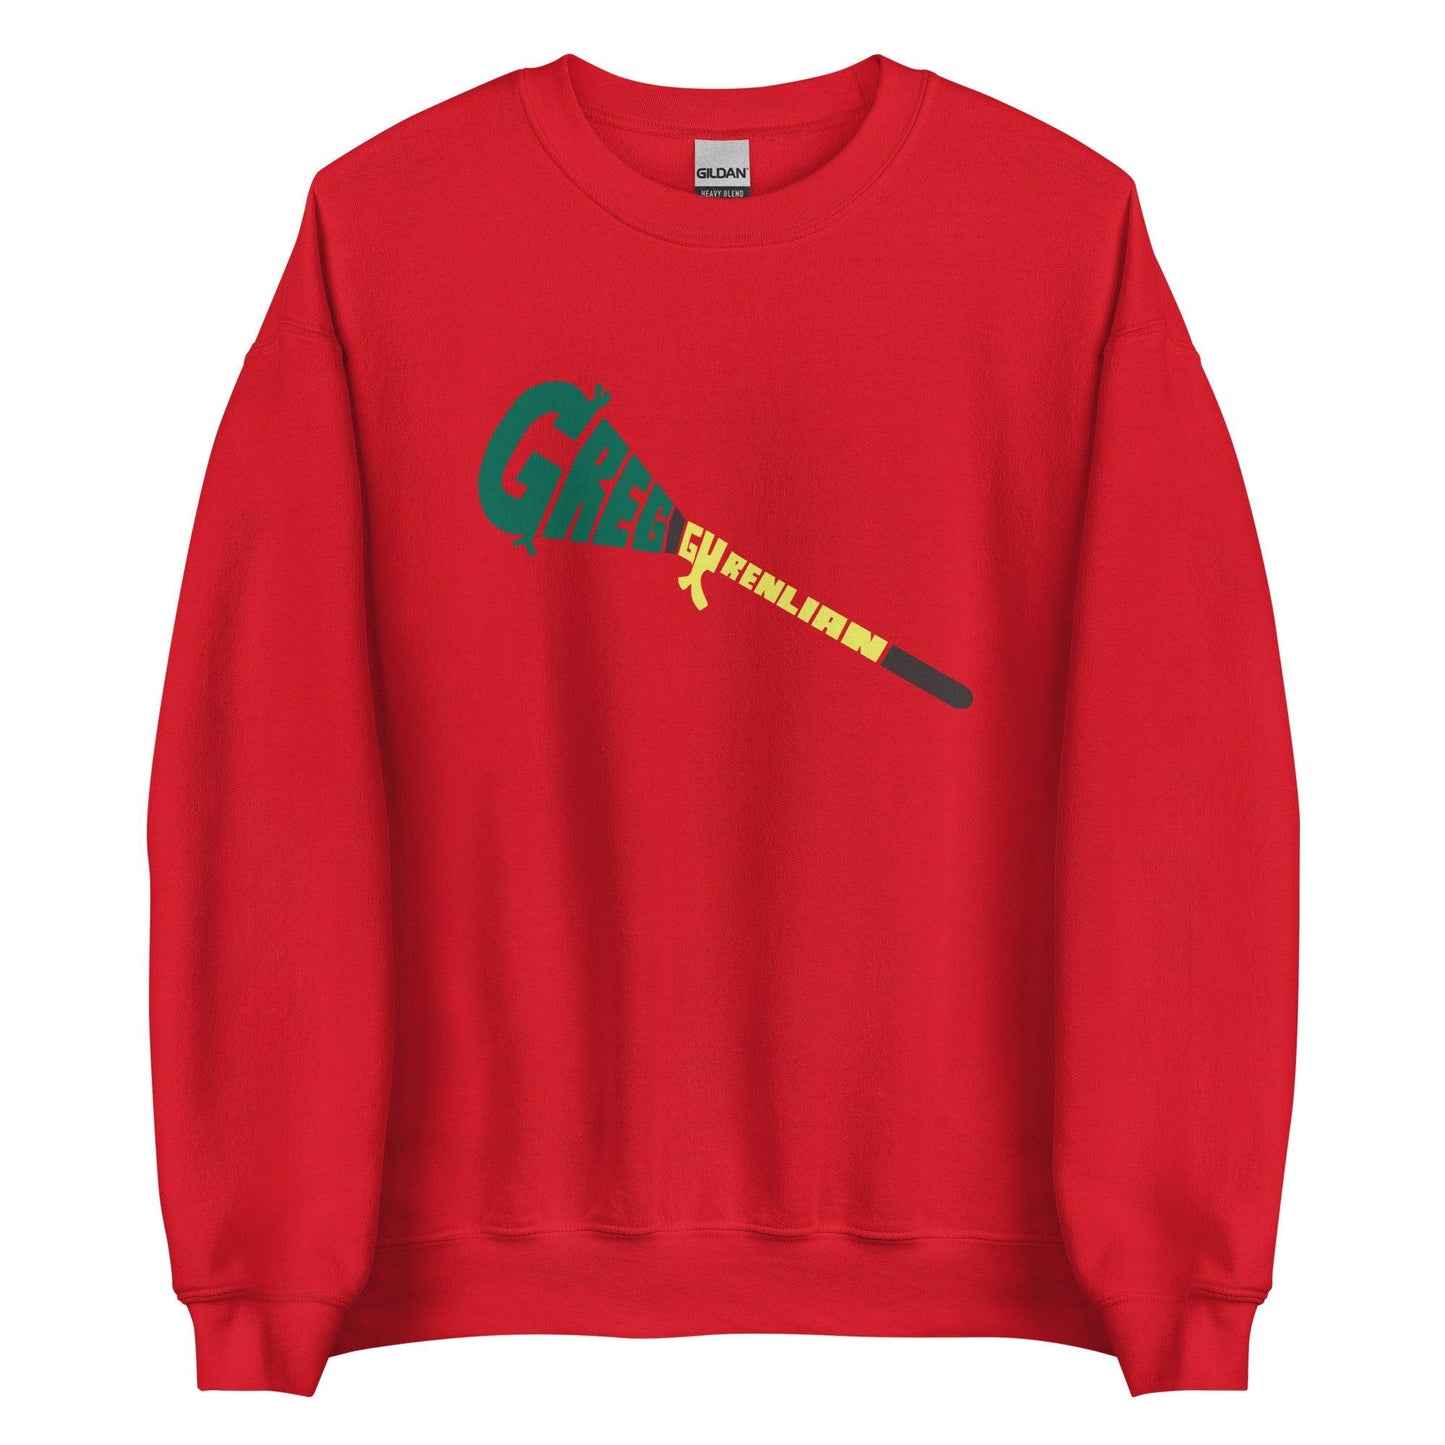 Greg Gurenlian "Essential" Sweatshirt - Fan Arch